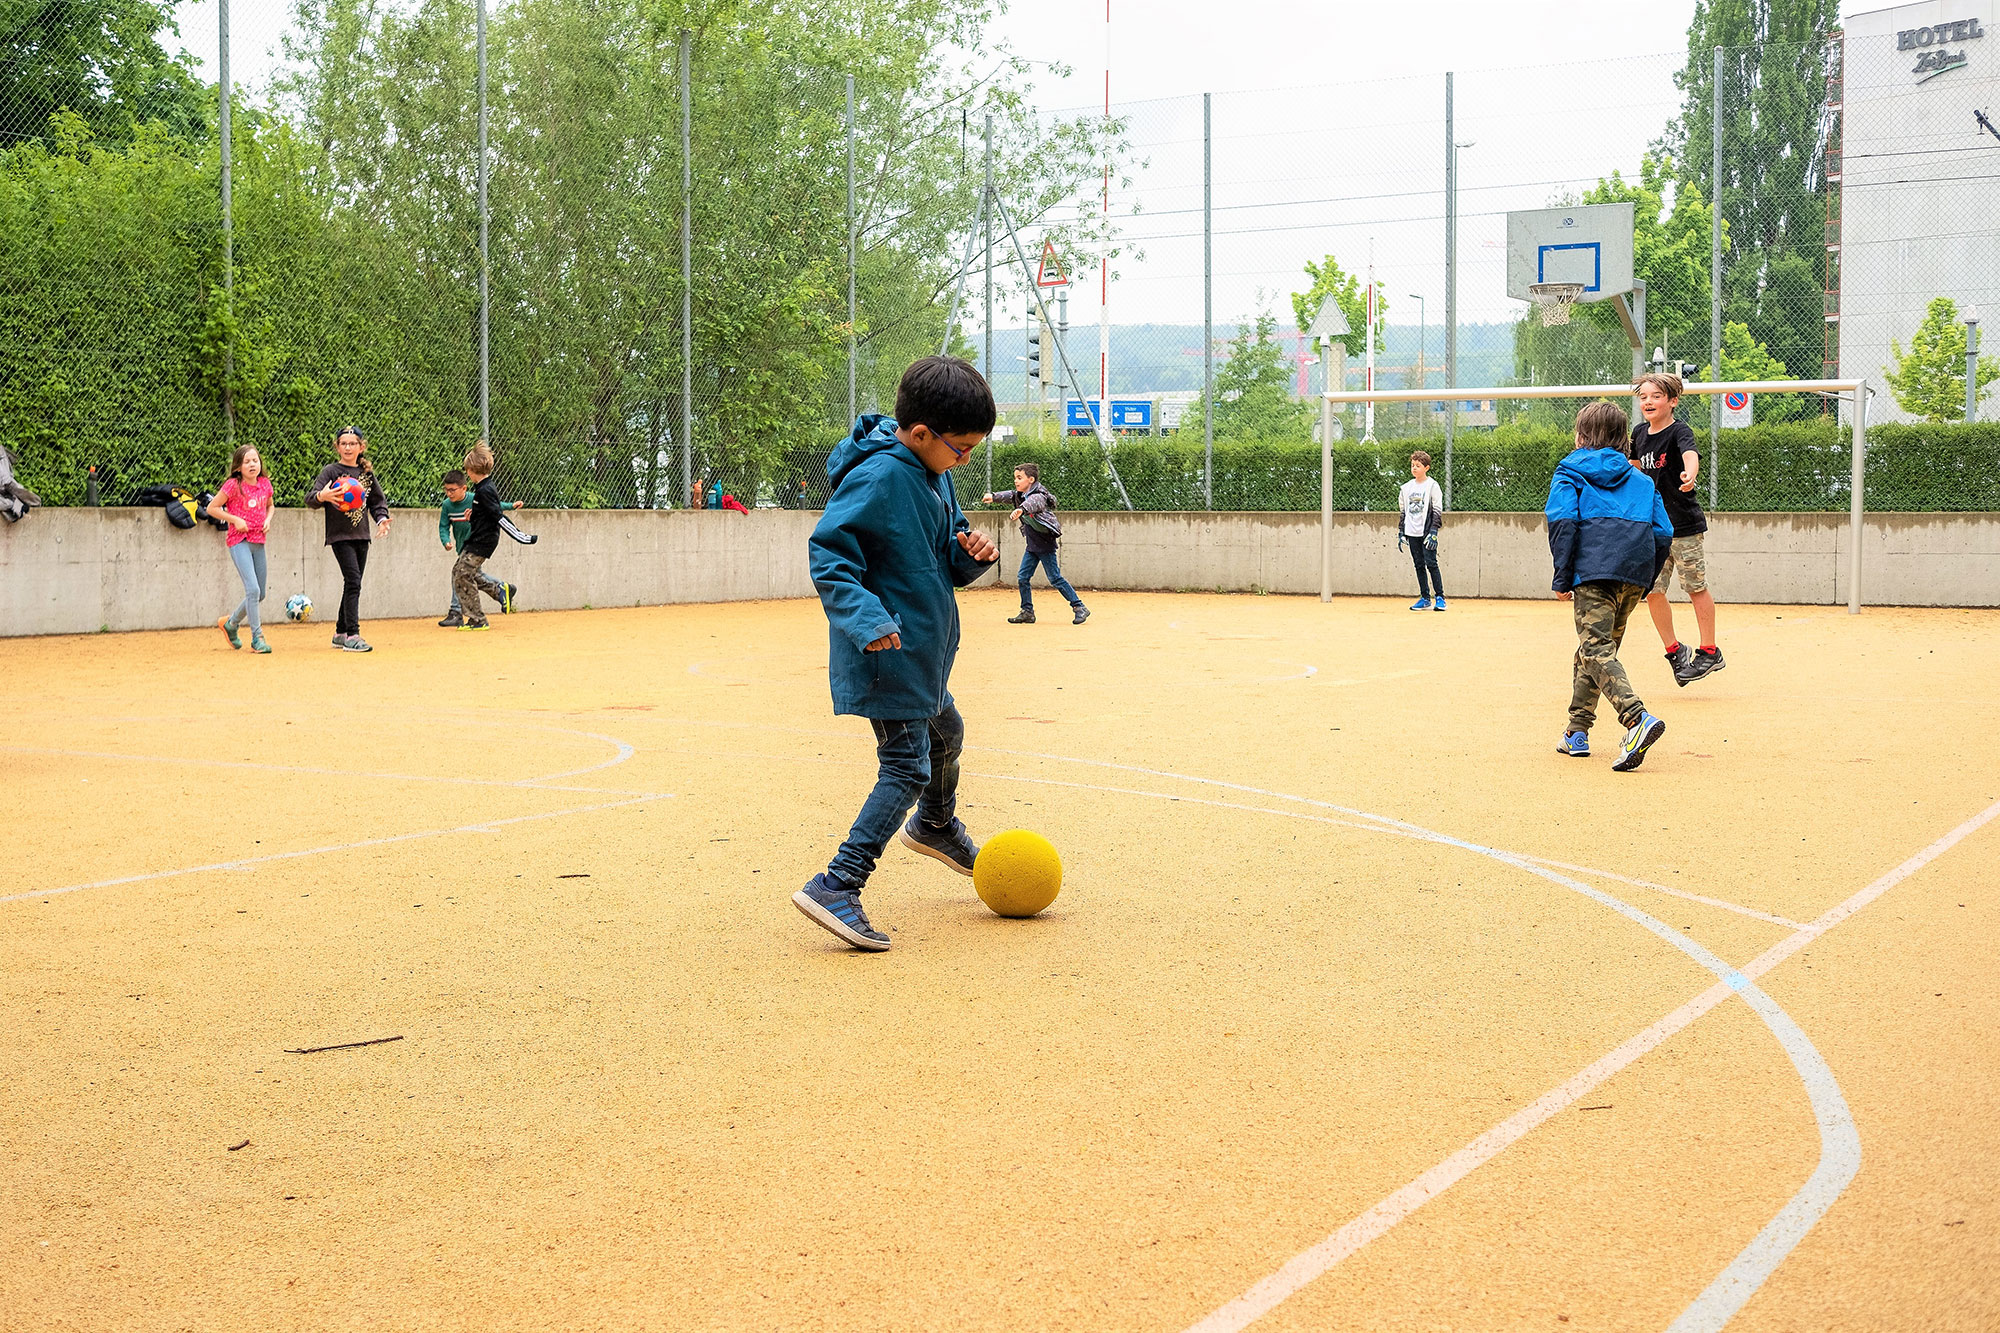 Ein paar Kinder spielen auf dem Sportplatz vor der Schule. Im Fokus ist ein Junge, der mit einem Fussball spielt.	